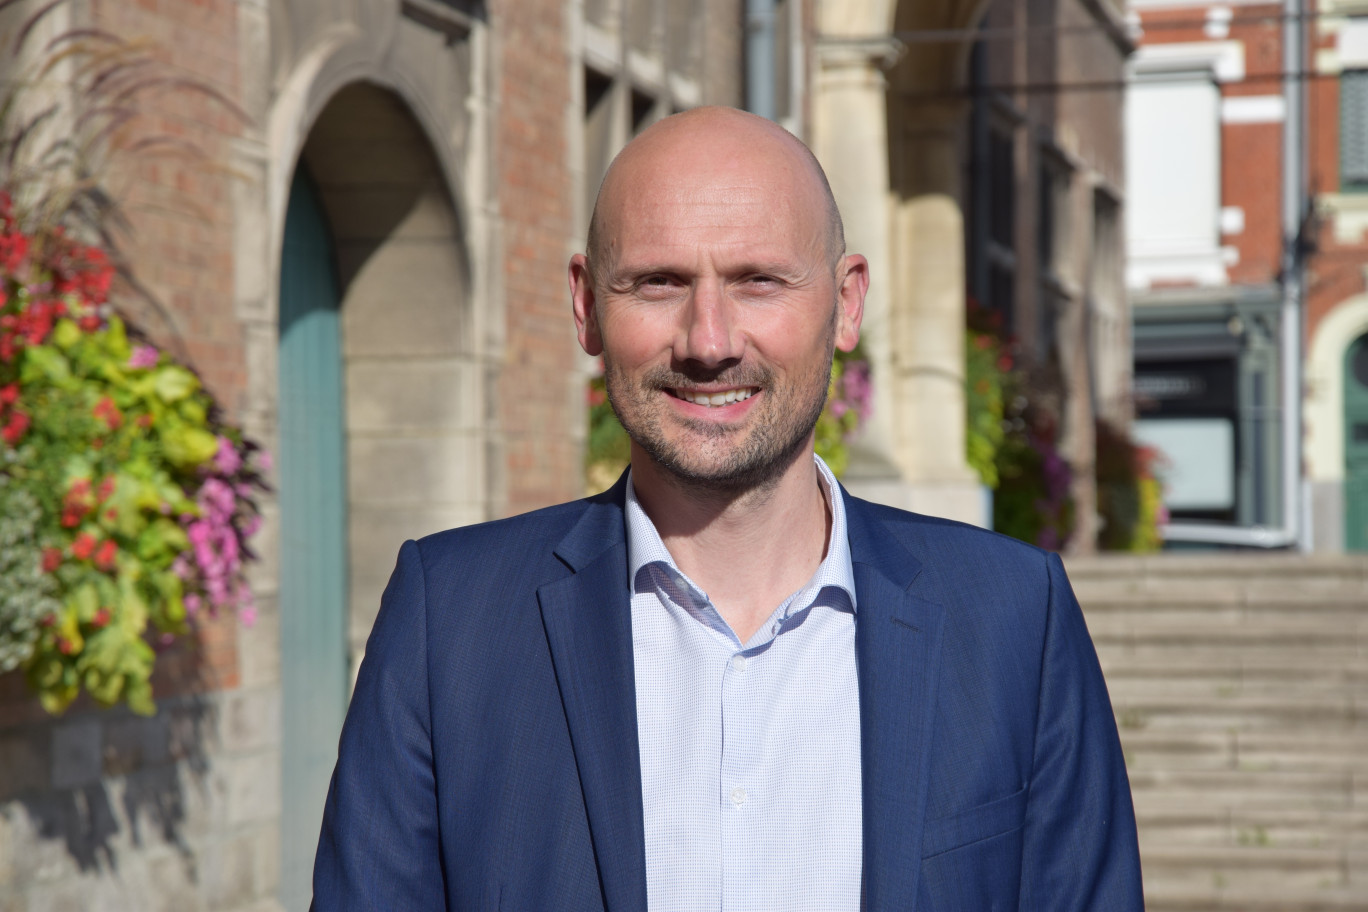 «Nous sommes candidat pour accueillir la future Cité de la bière, dont l’histoire est fortement liée à la Flandre» rappelle Antony Gautier, maire de Bailleul.